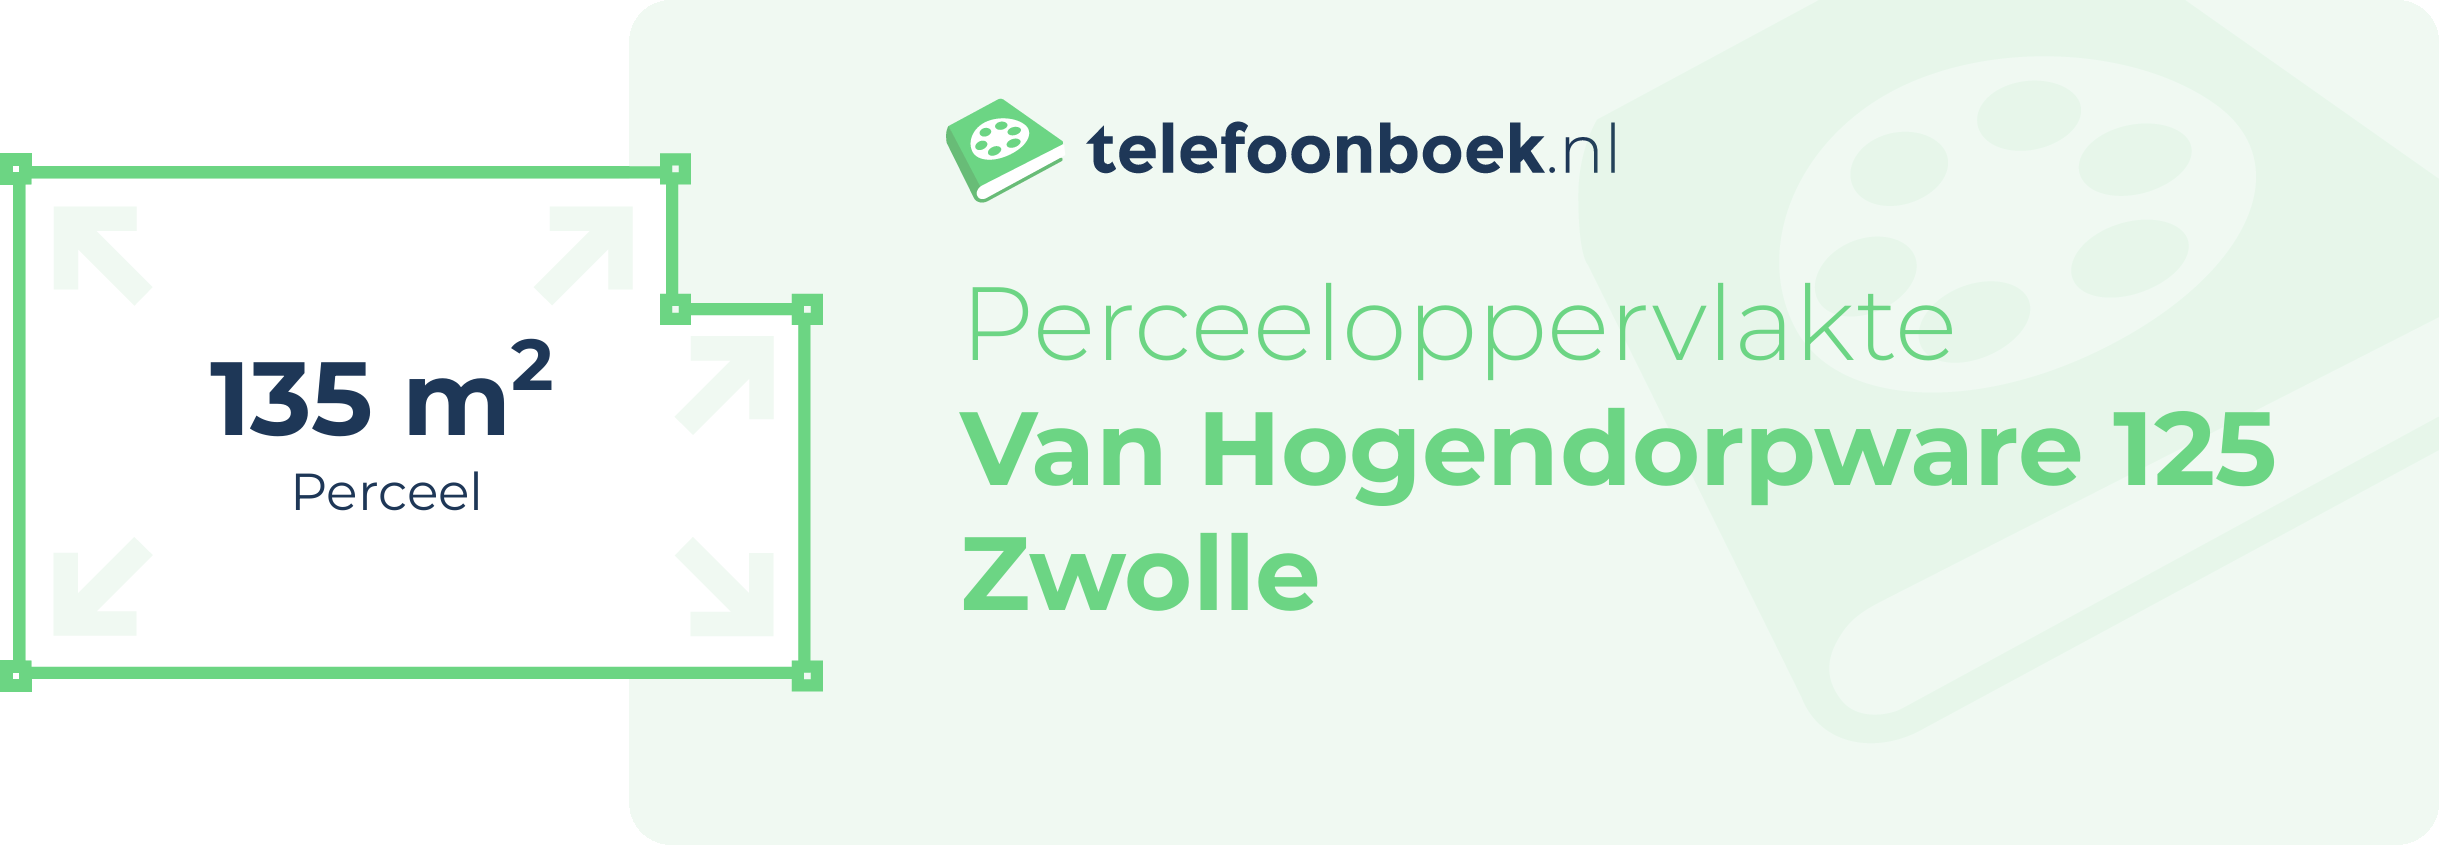 Perceeloppervlakte Van Hogendorpware 125 Zwolle